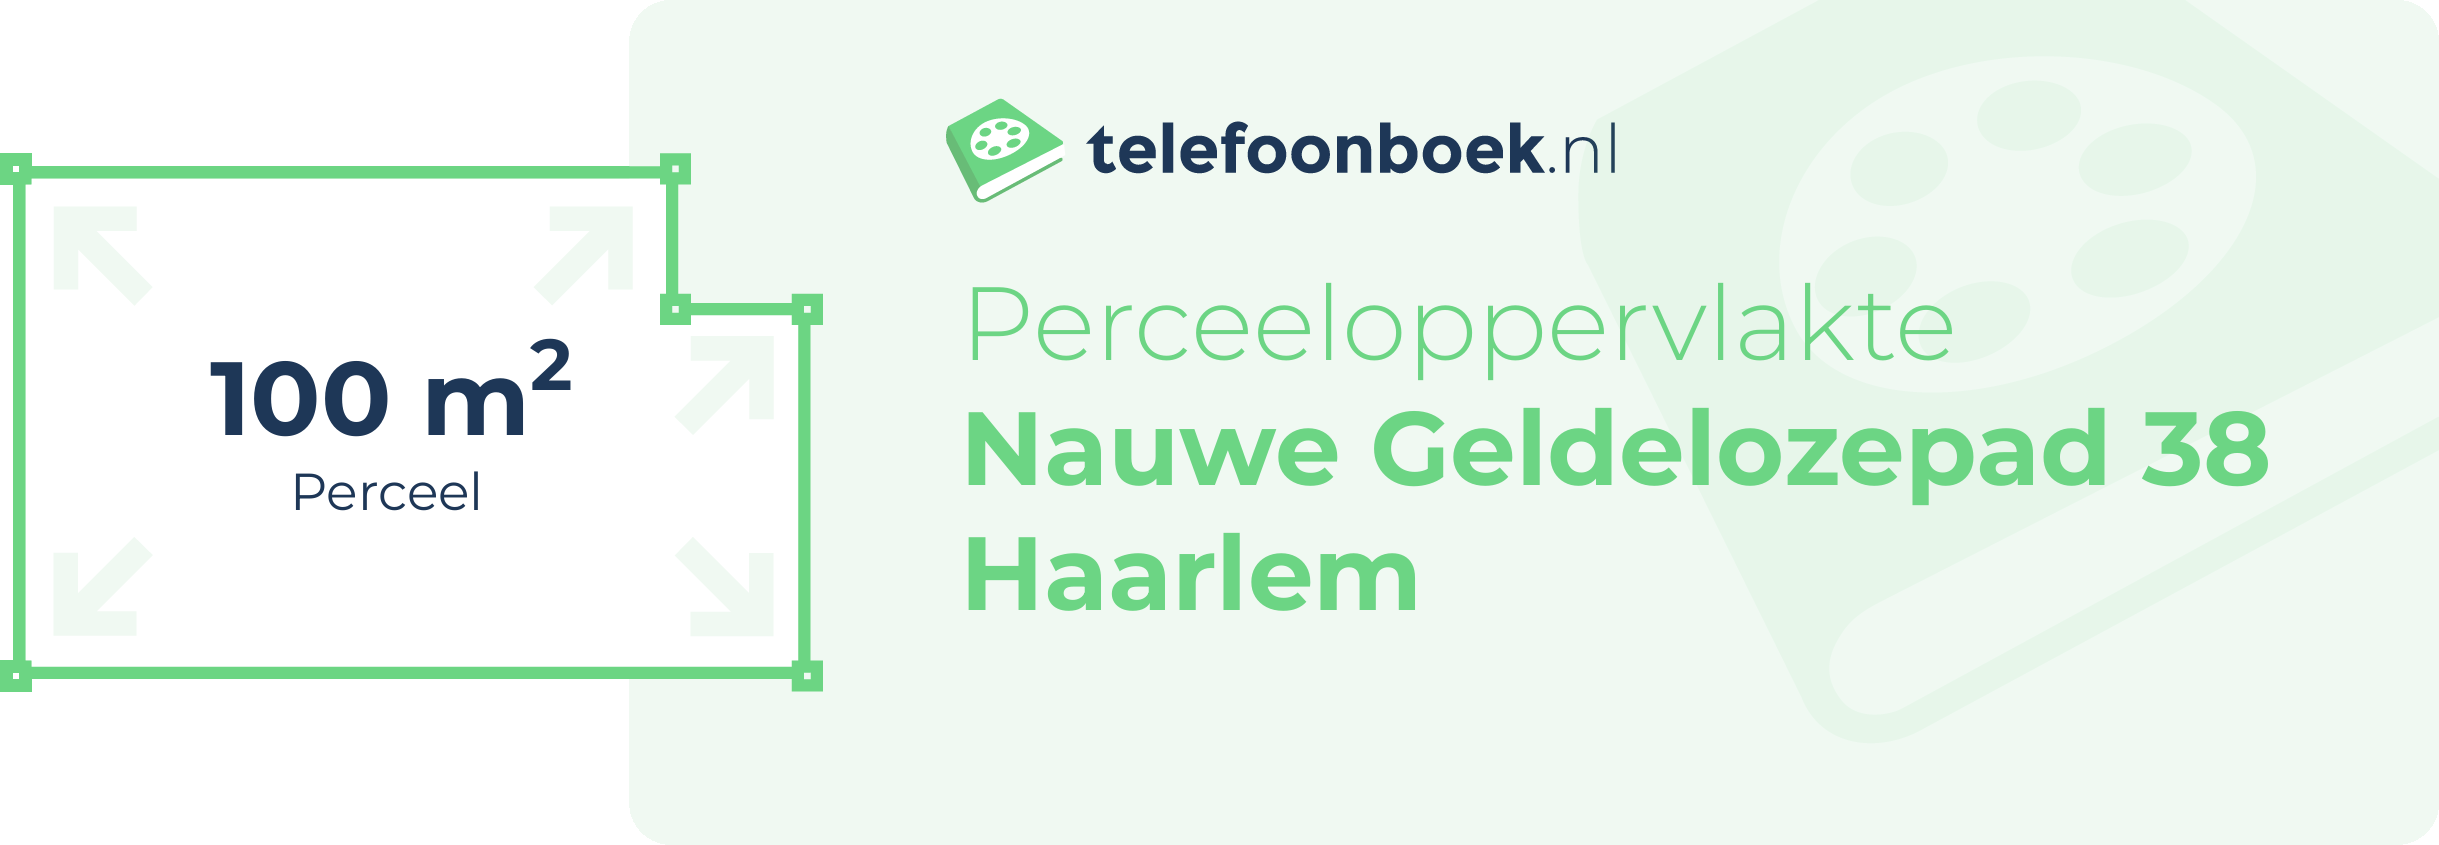 Perceeloppervlakte Nauwe Geldelozepad 38 Haarlem